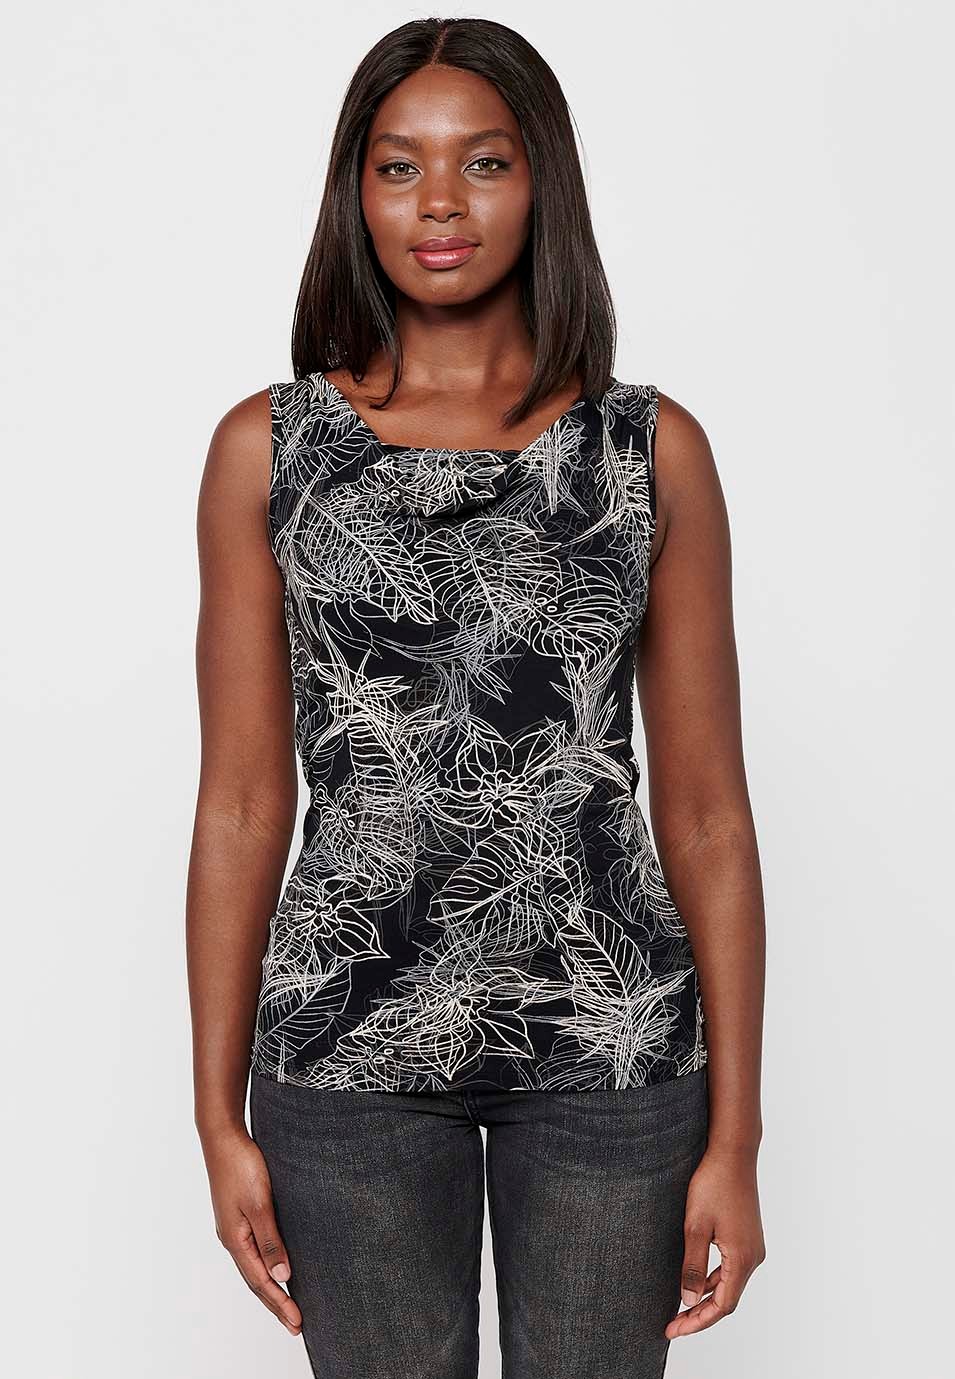 Camiseta sin mangas de Cuello barca y Estampado floral de Color Negro para Mujer